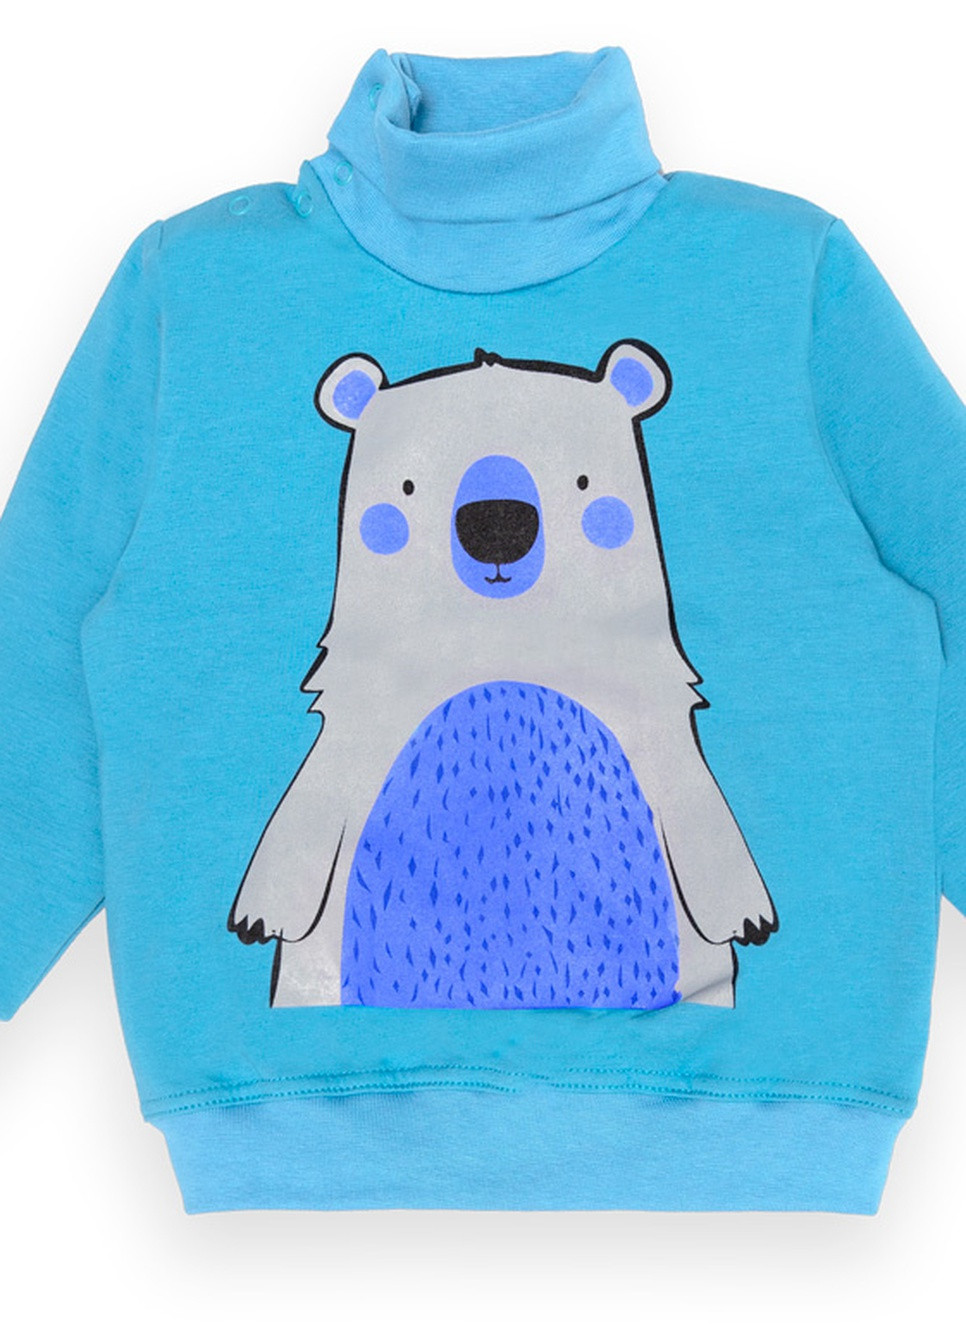 Бирюзовый зимний детский свитер для мальчика sv-22-2-8 *bear* Габби